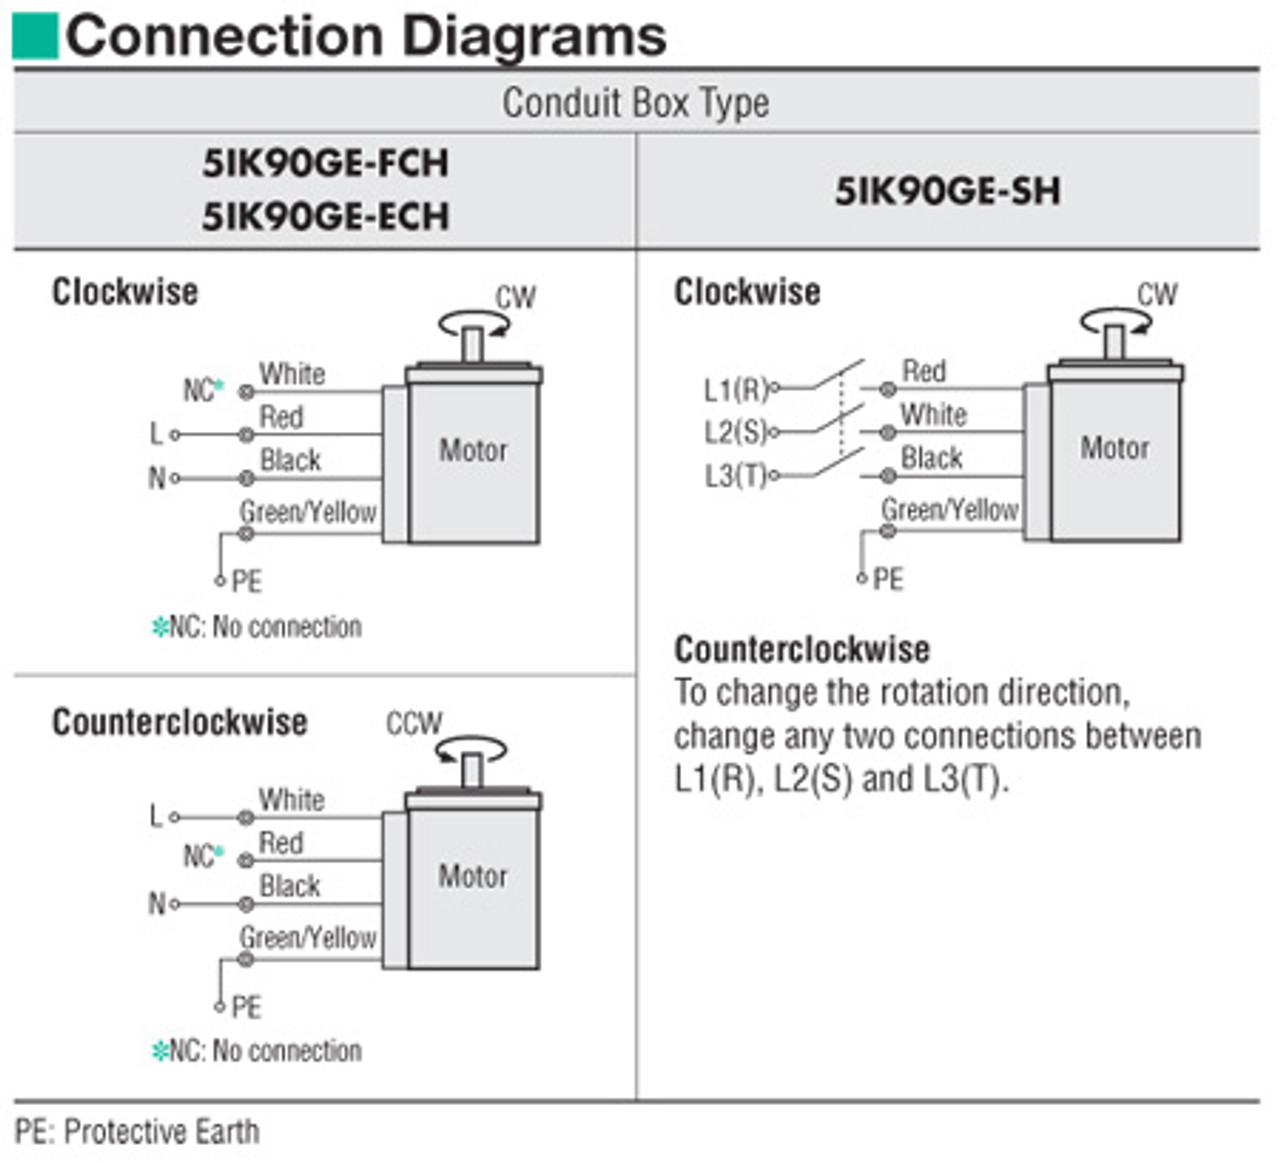 5IK90GE-FCH / 5GE5SA - Connection